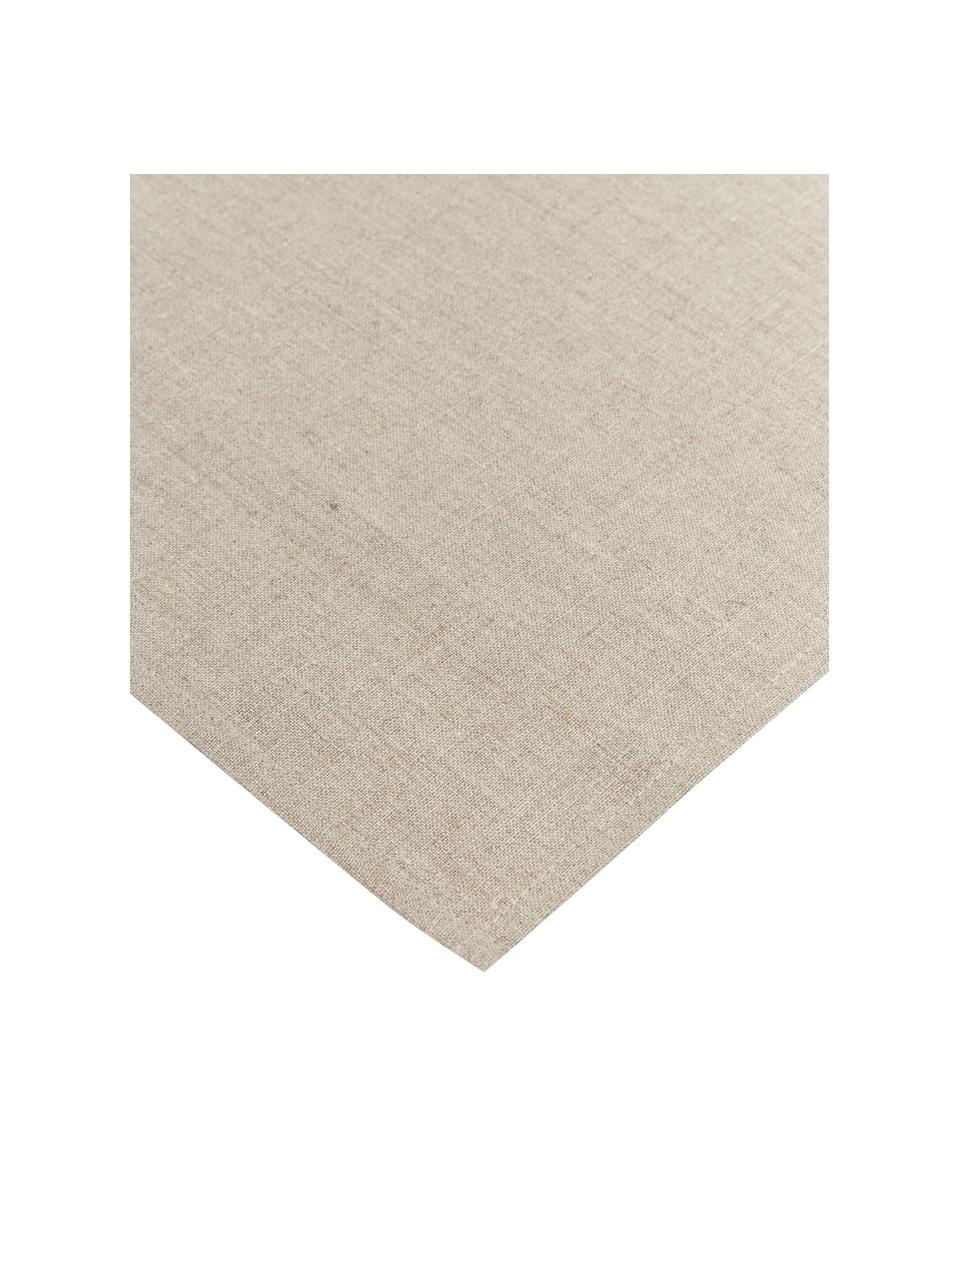 Linnen tafelkleed Heddie in beige, 100% linnen, Beige, Voor 4 - 6 personen (B 145 x L 200 cm)